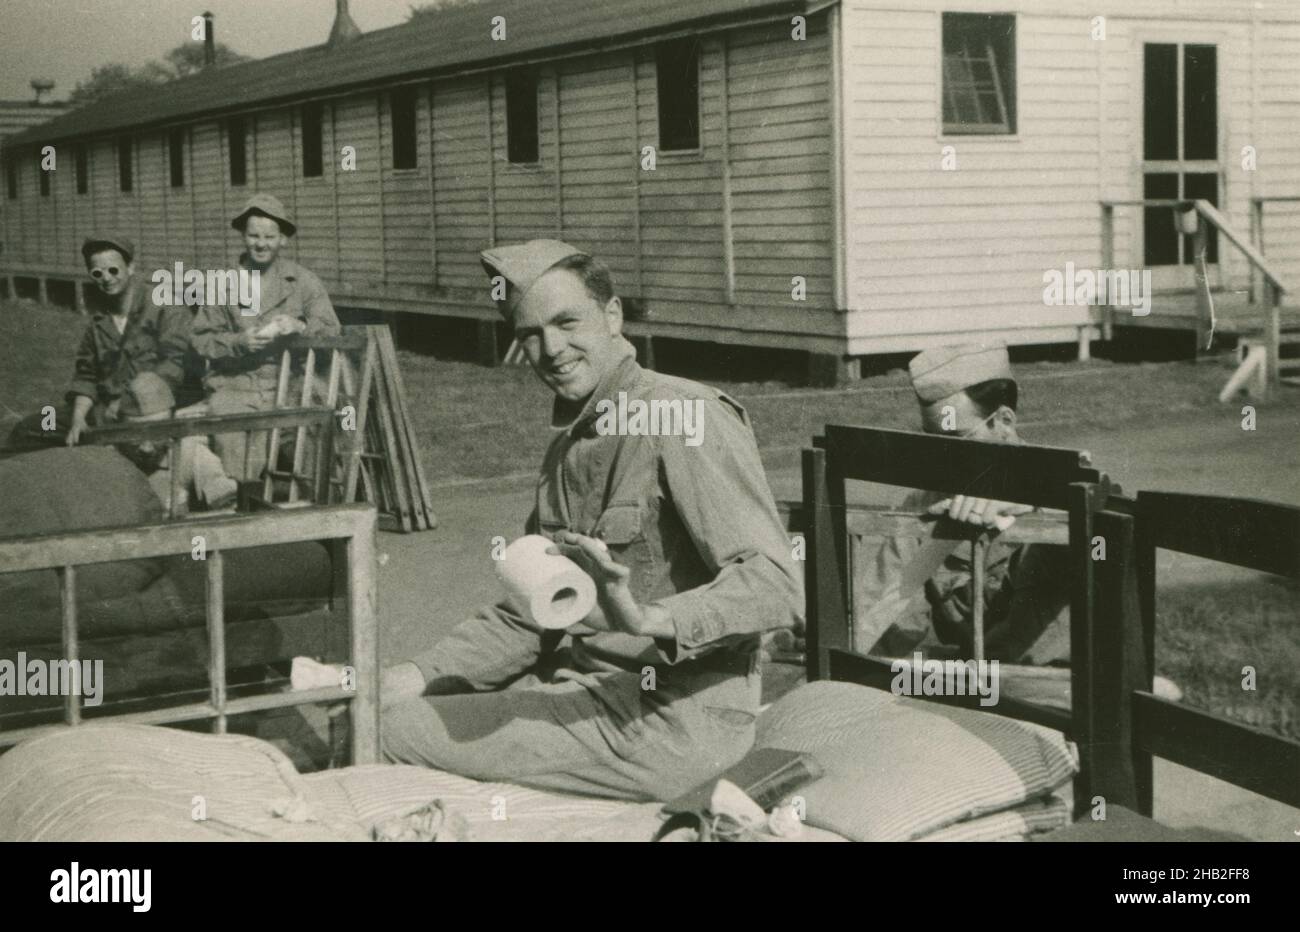 Antica fotografia del c1950, soldato dell'esercito post-WWII che tiene carta igienica fuori dalle caserme. Il gruppo di soldati sta rimuovendo o installando le finestre nell'edificio. Posizione esatta sconosciuta, Stati Uniti. FONTE: STAMPA FOTOGRAFICA ORIGINALE. Foto Stock